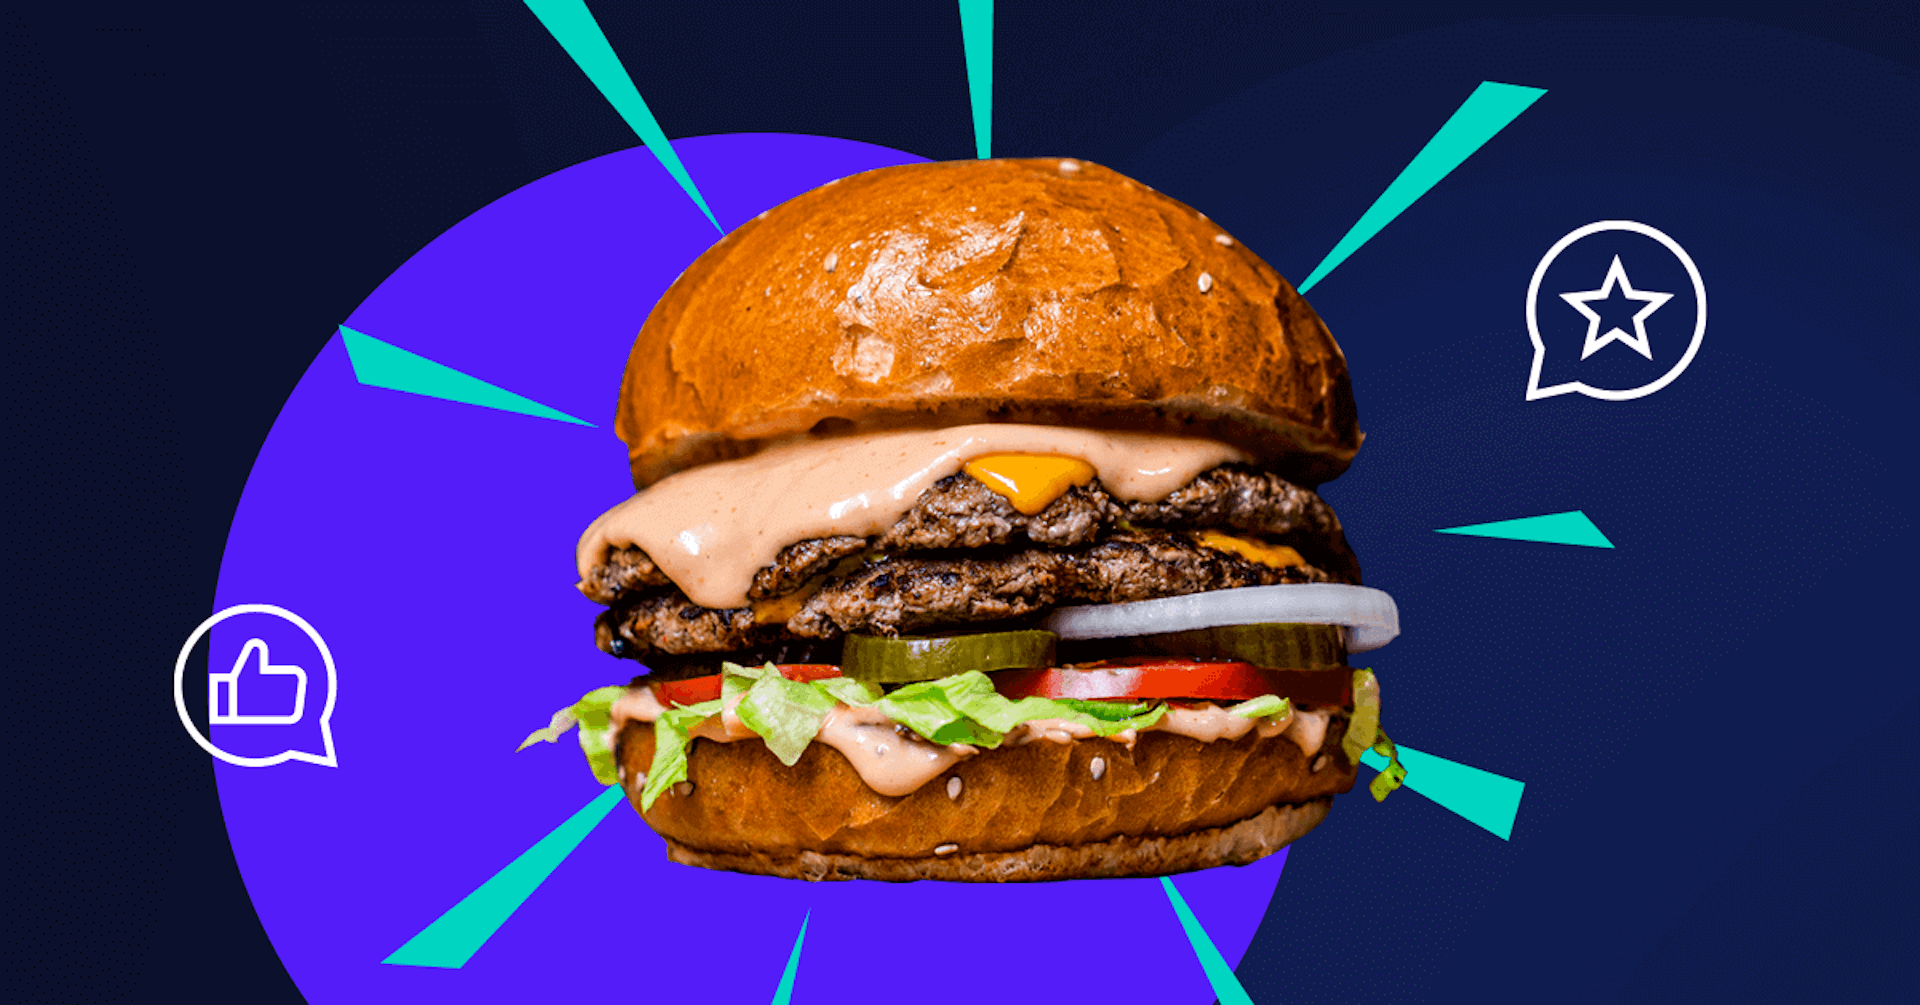 Los mejores restaurantes de hamburguesas que no te dejarán empezar la dieta